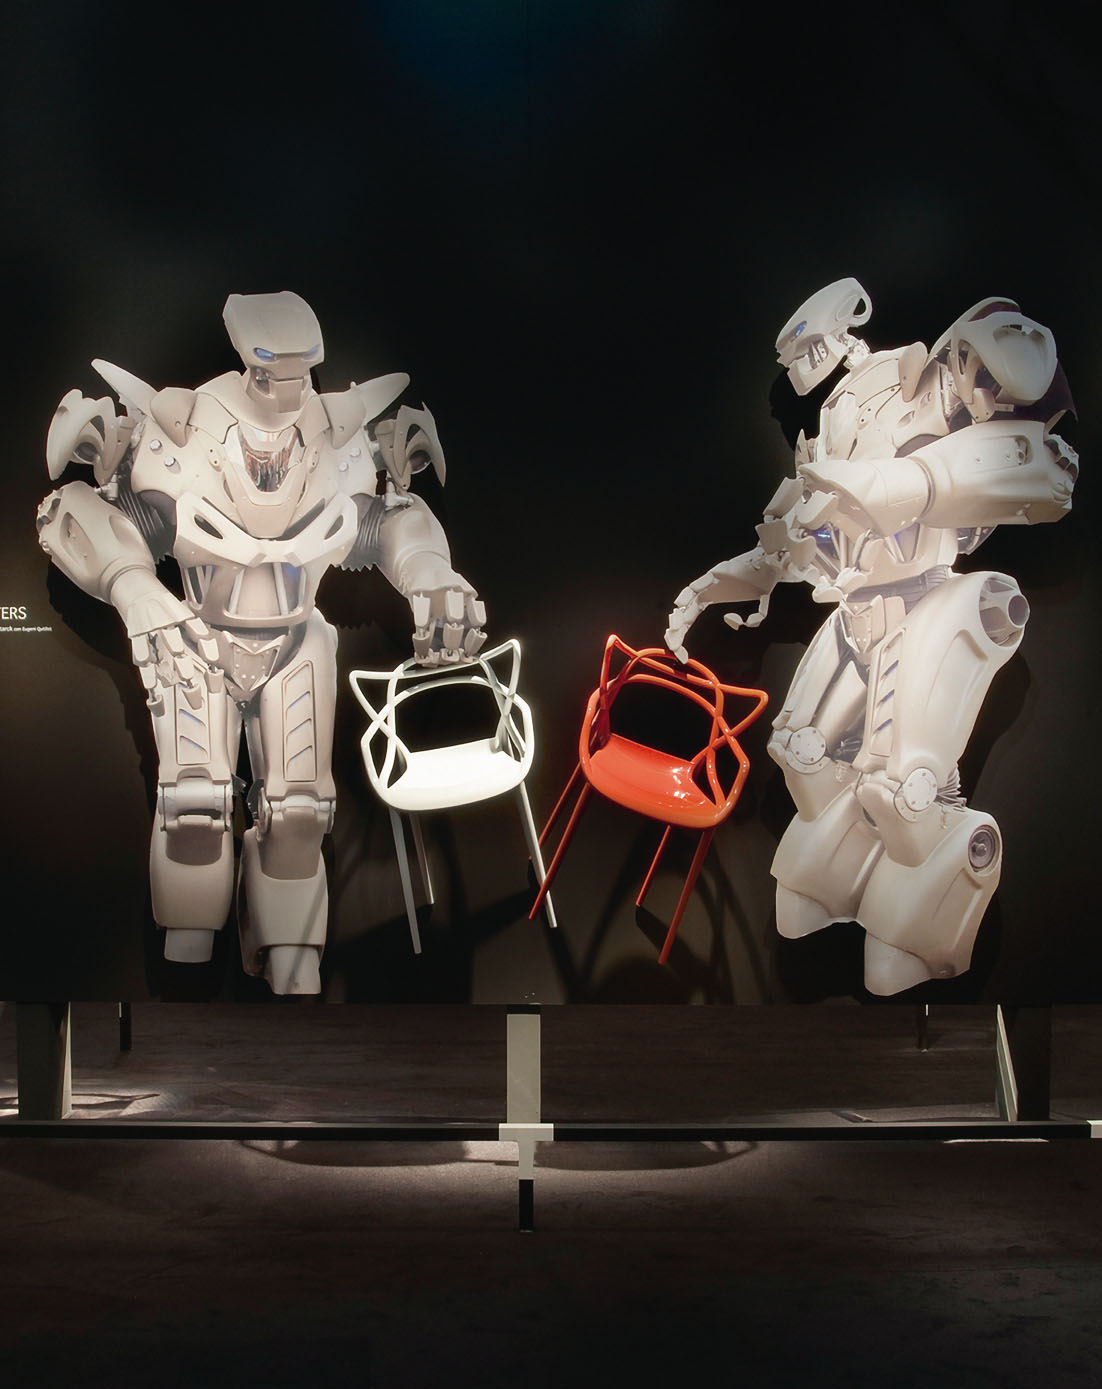 Un angolo espositivo dello stand Kartell al Salone del Mobile nel 2009 (Milano). Due robot presentano la nuova sedia Masters. / Decoration panel at the Kartell booth, Salone del Mobile, Milan, 2009. Two androids introduce the new chair Masters.